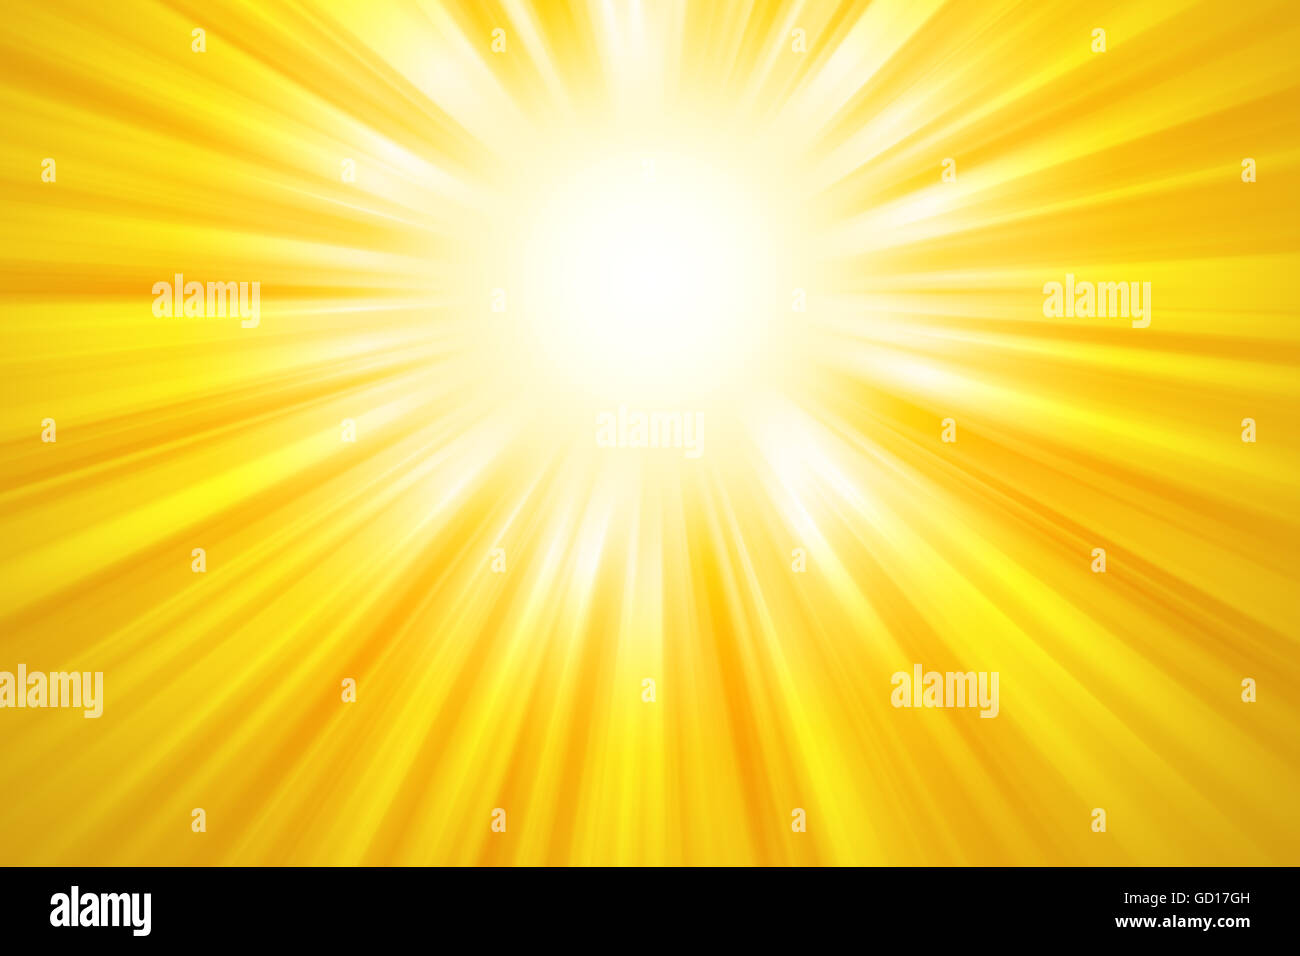 Golden raggi del sole sullo sfondo. Di colore giallo brillante fasci di luce provenienti dalla parte superiore al centro dell'immagine. Illustrazione. Foto Stock